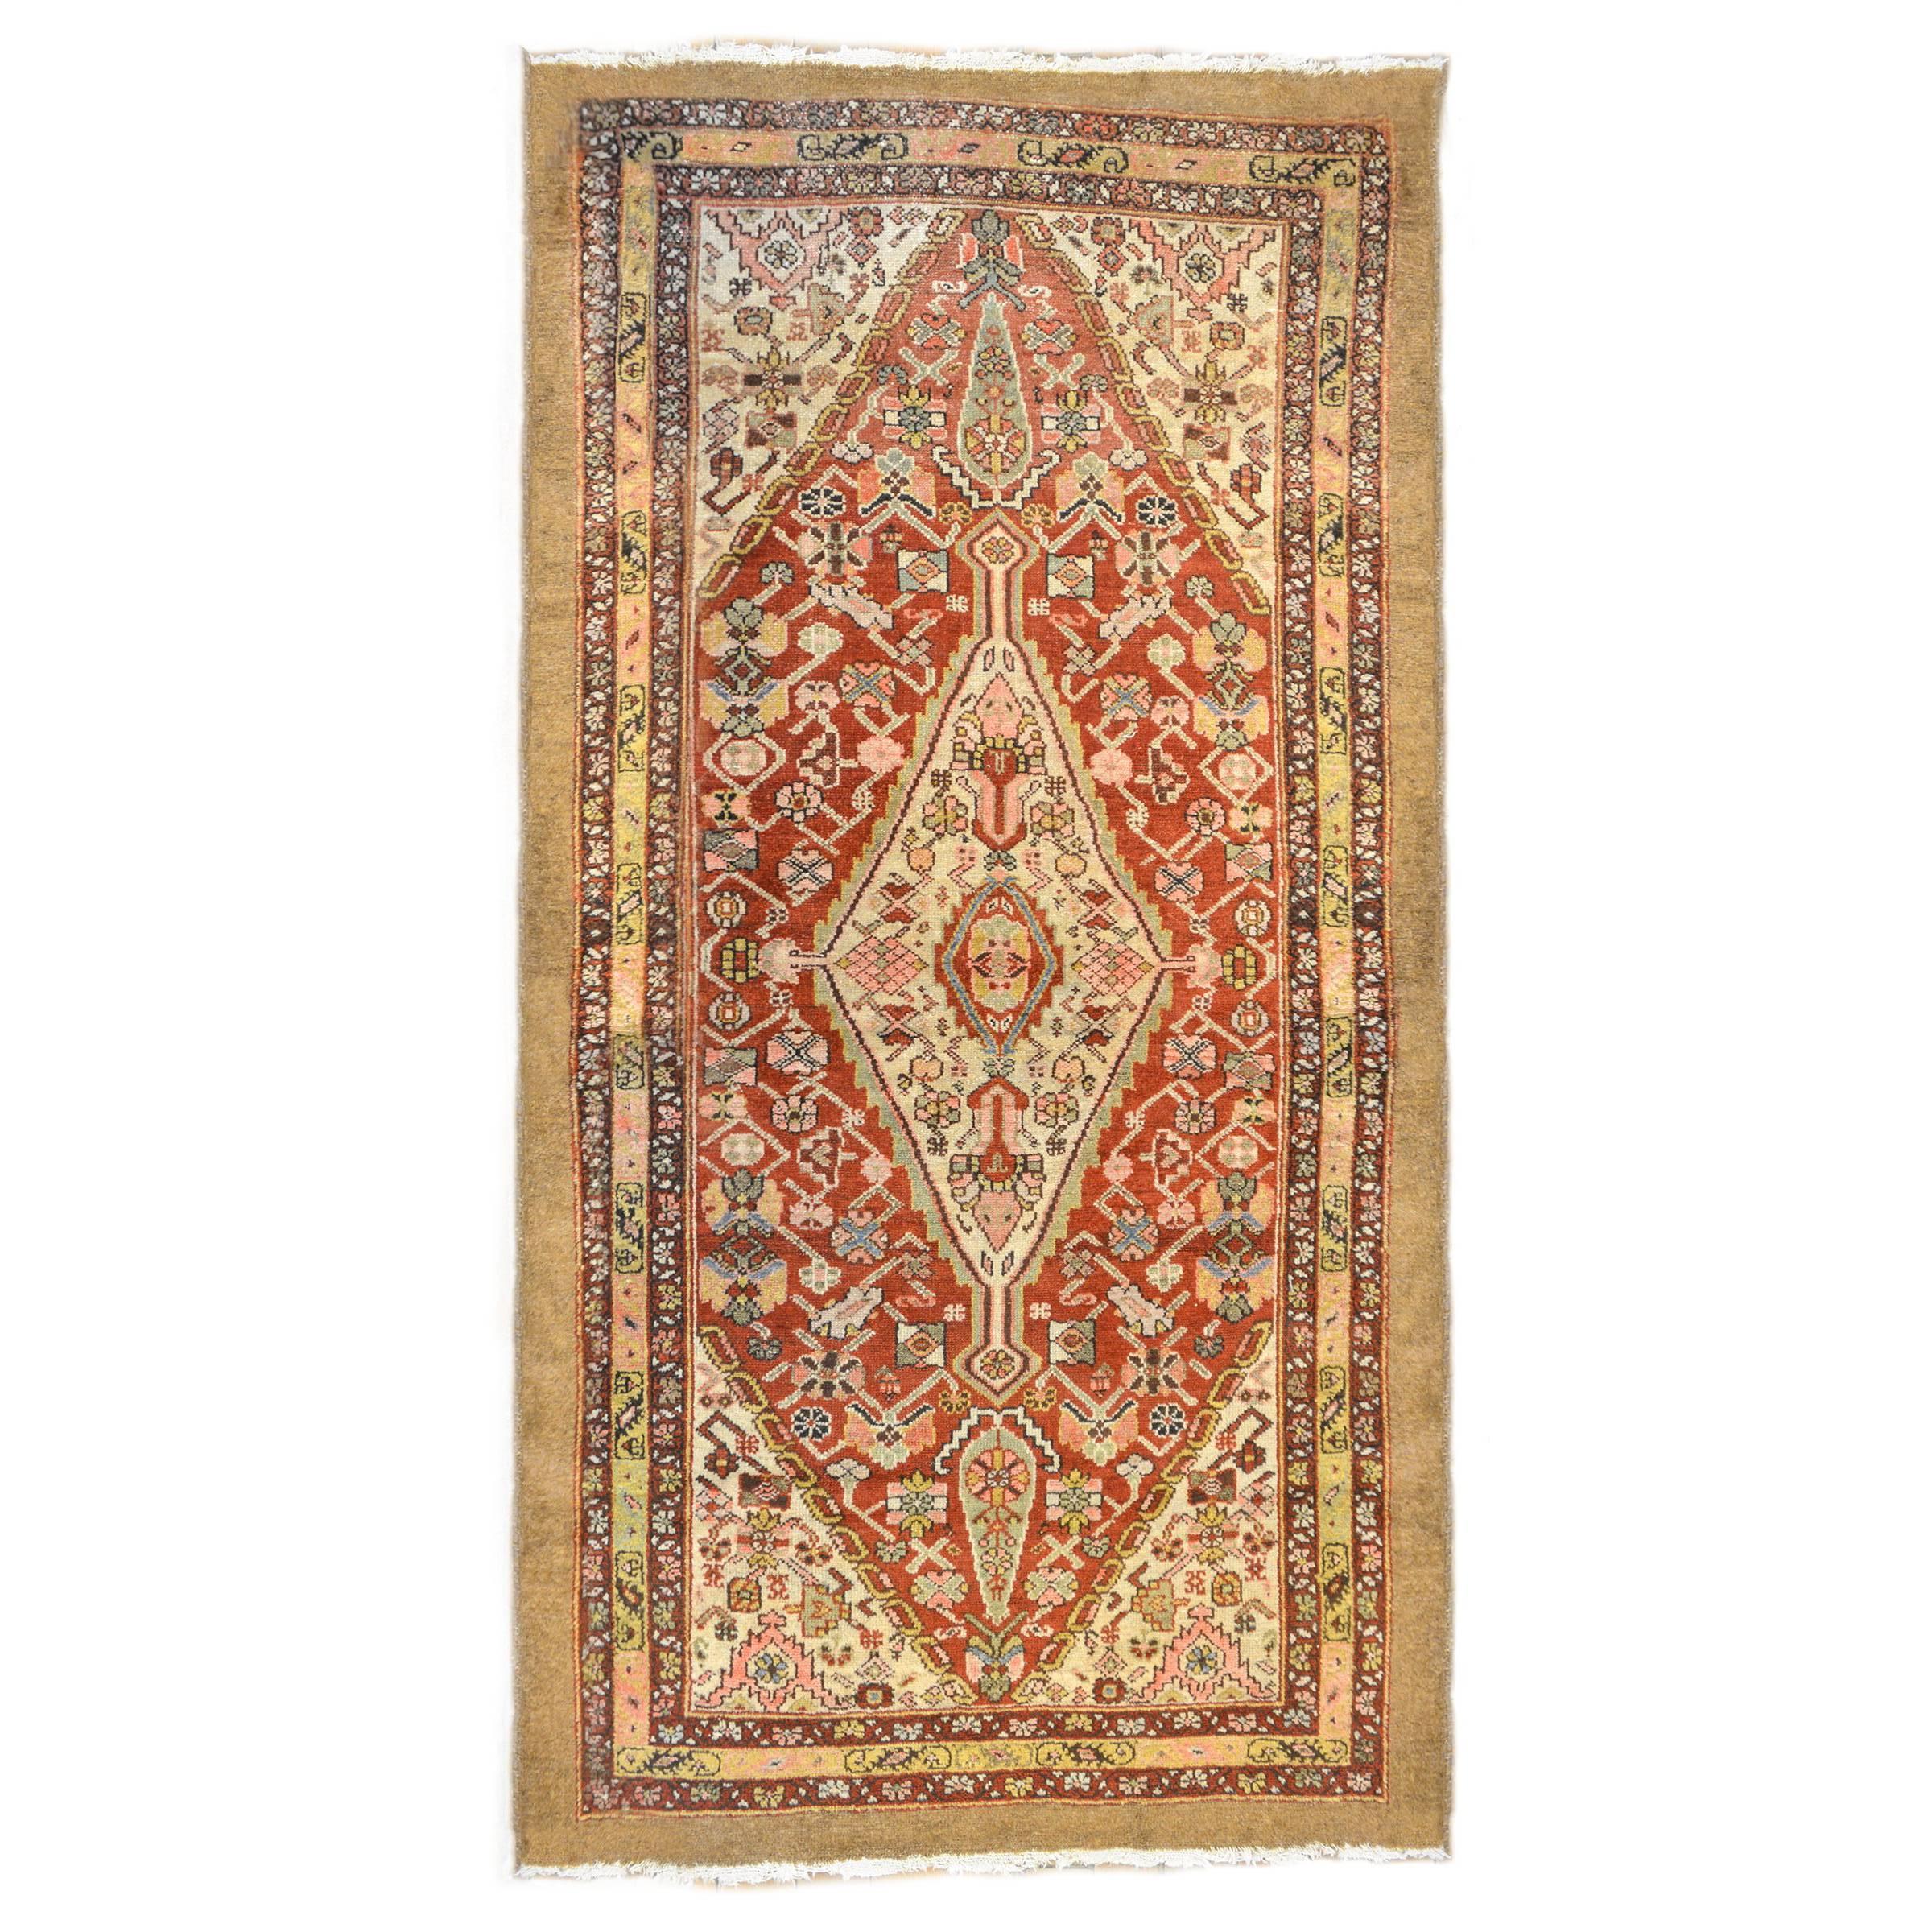 Extraordinaire tapis Serab du 19ème siècle